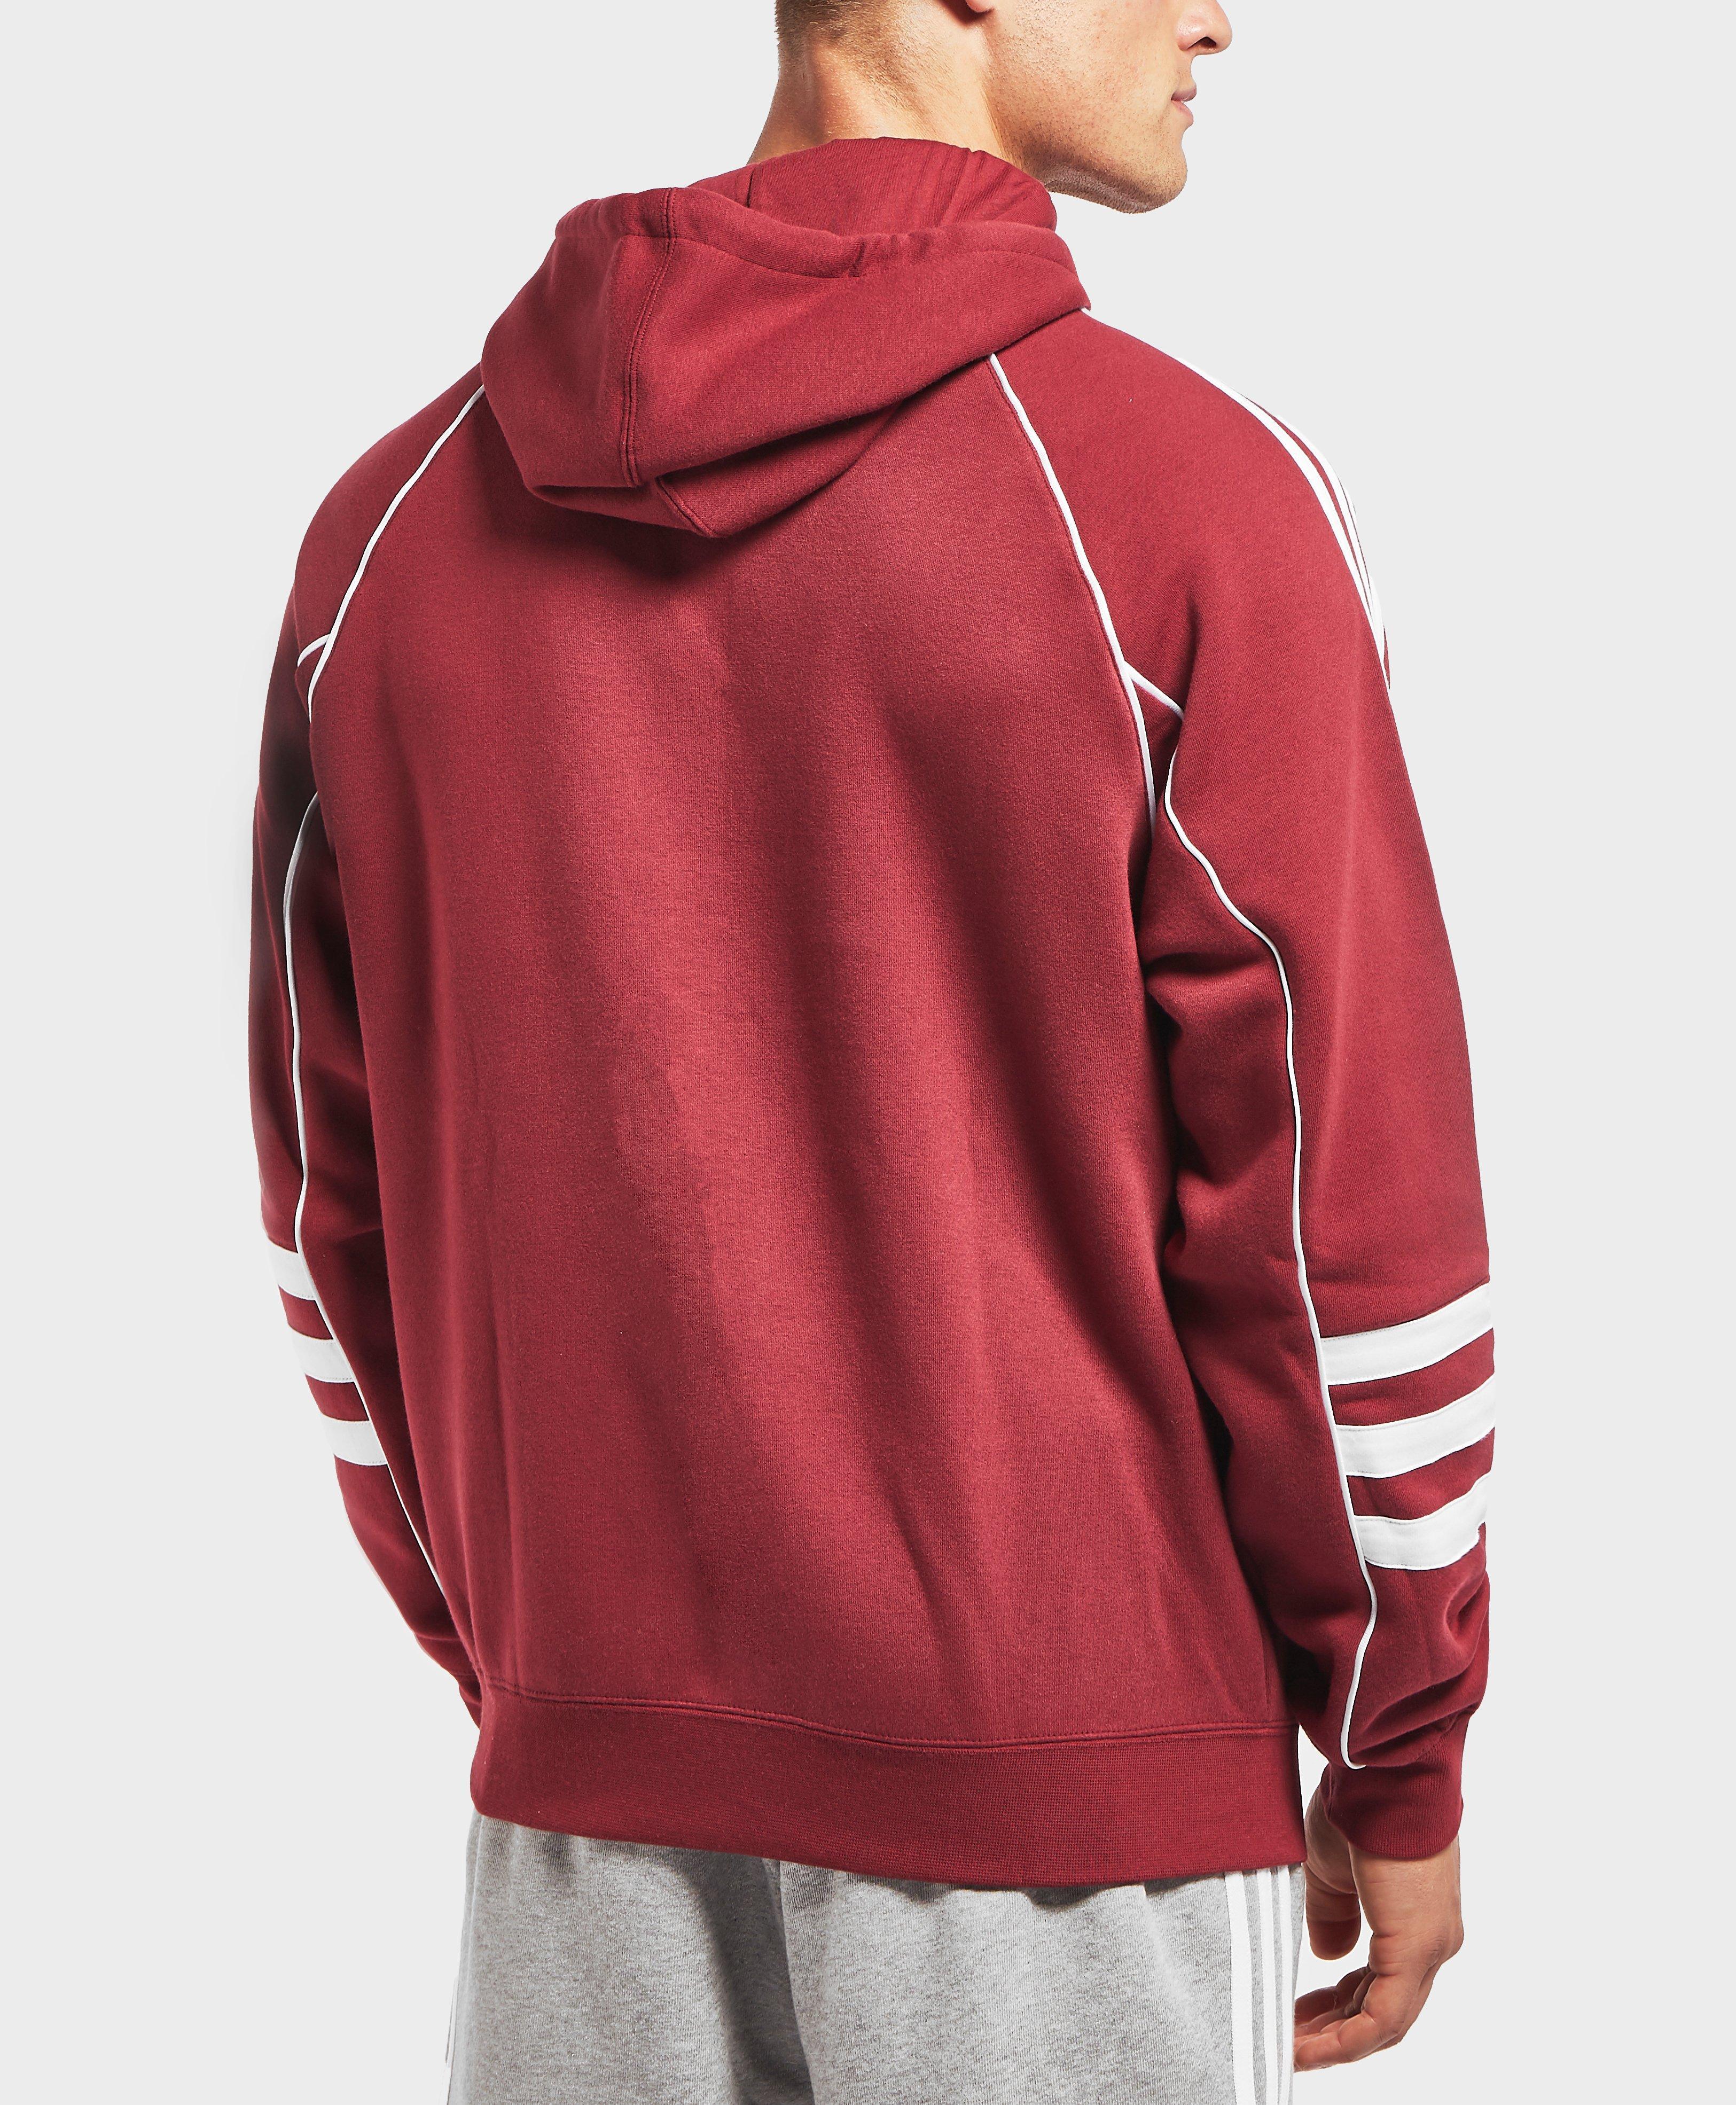 adidas originals authentic hoody in red dj2859